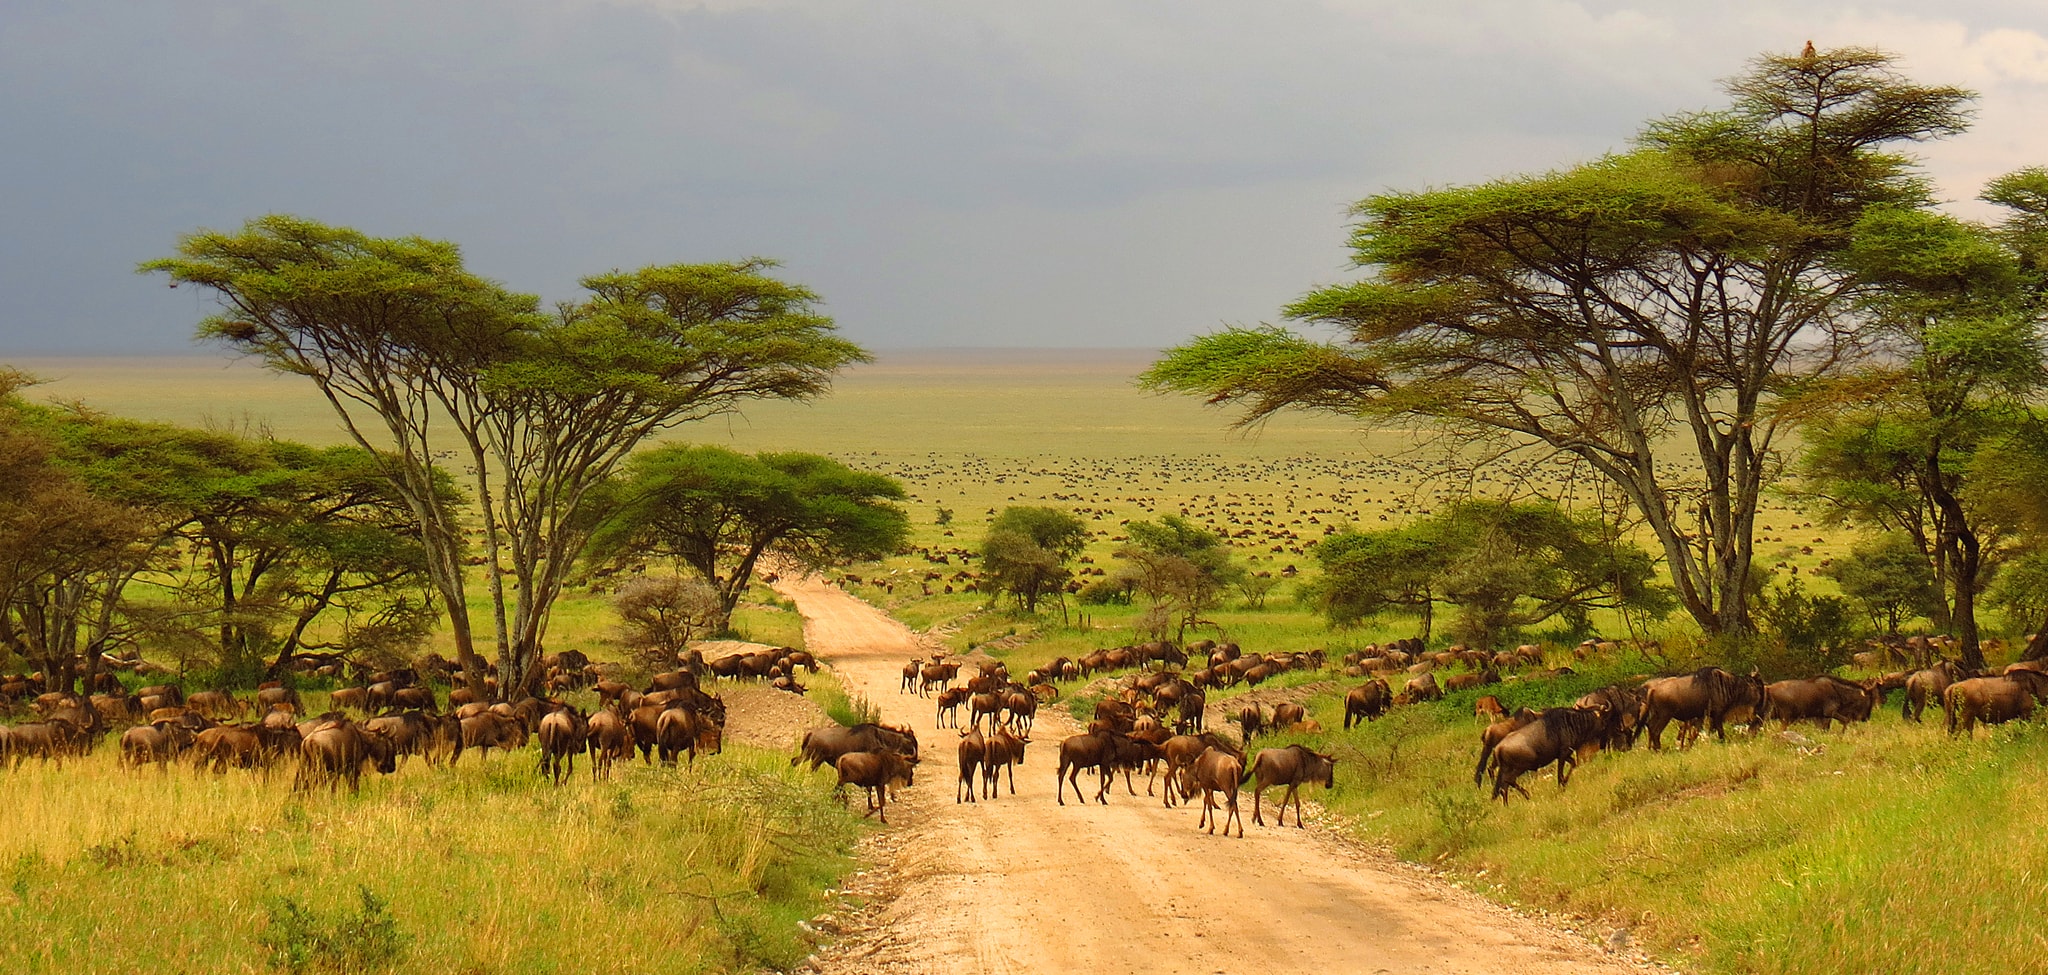 Dél-Afrika körutazás és szafari: Krüger Nemzeti Park